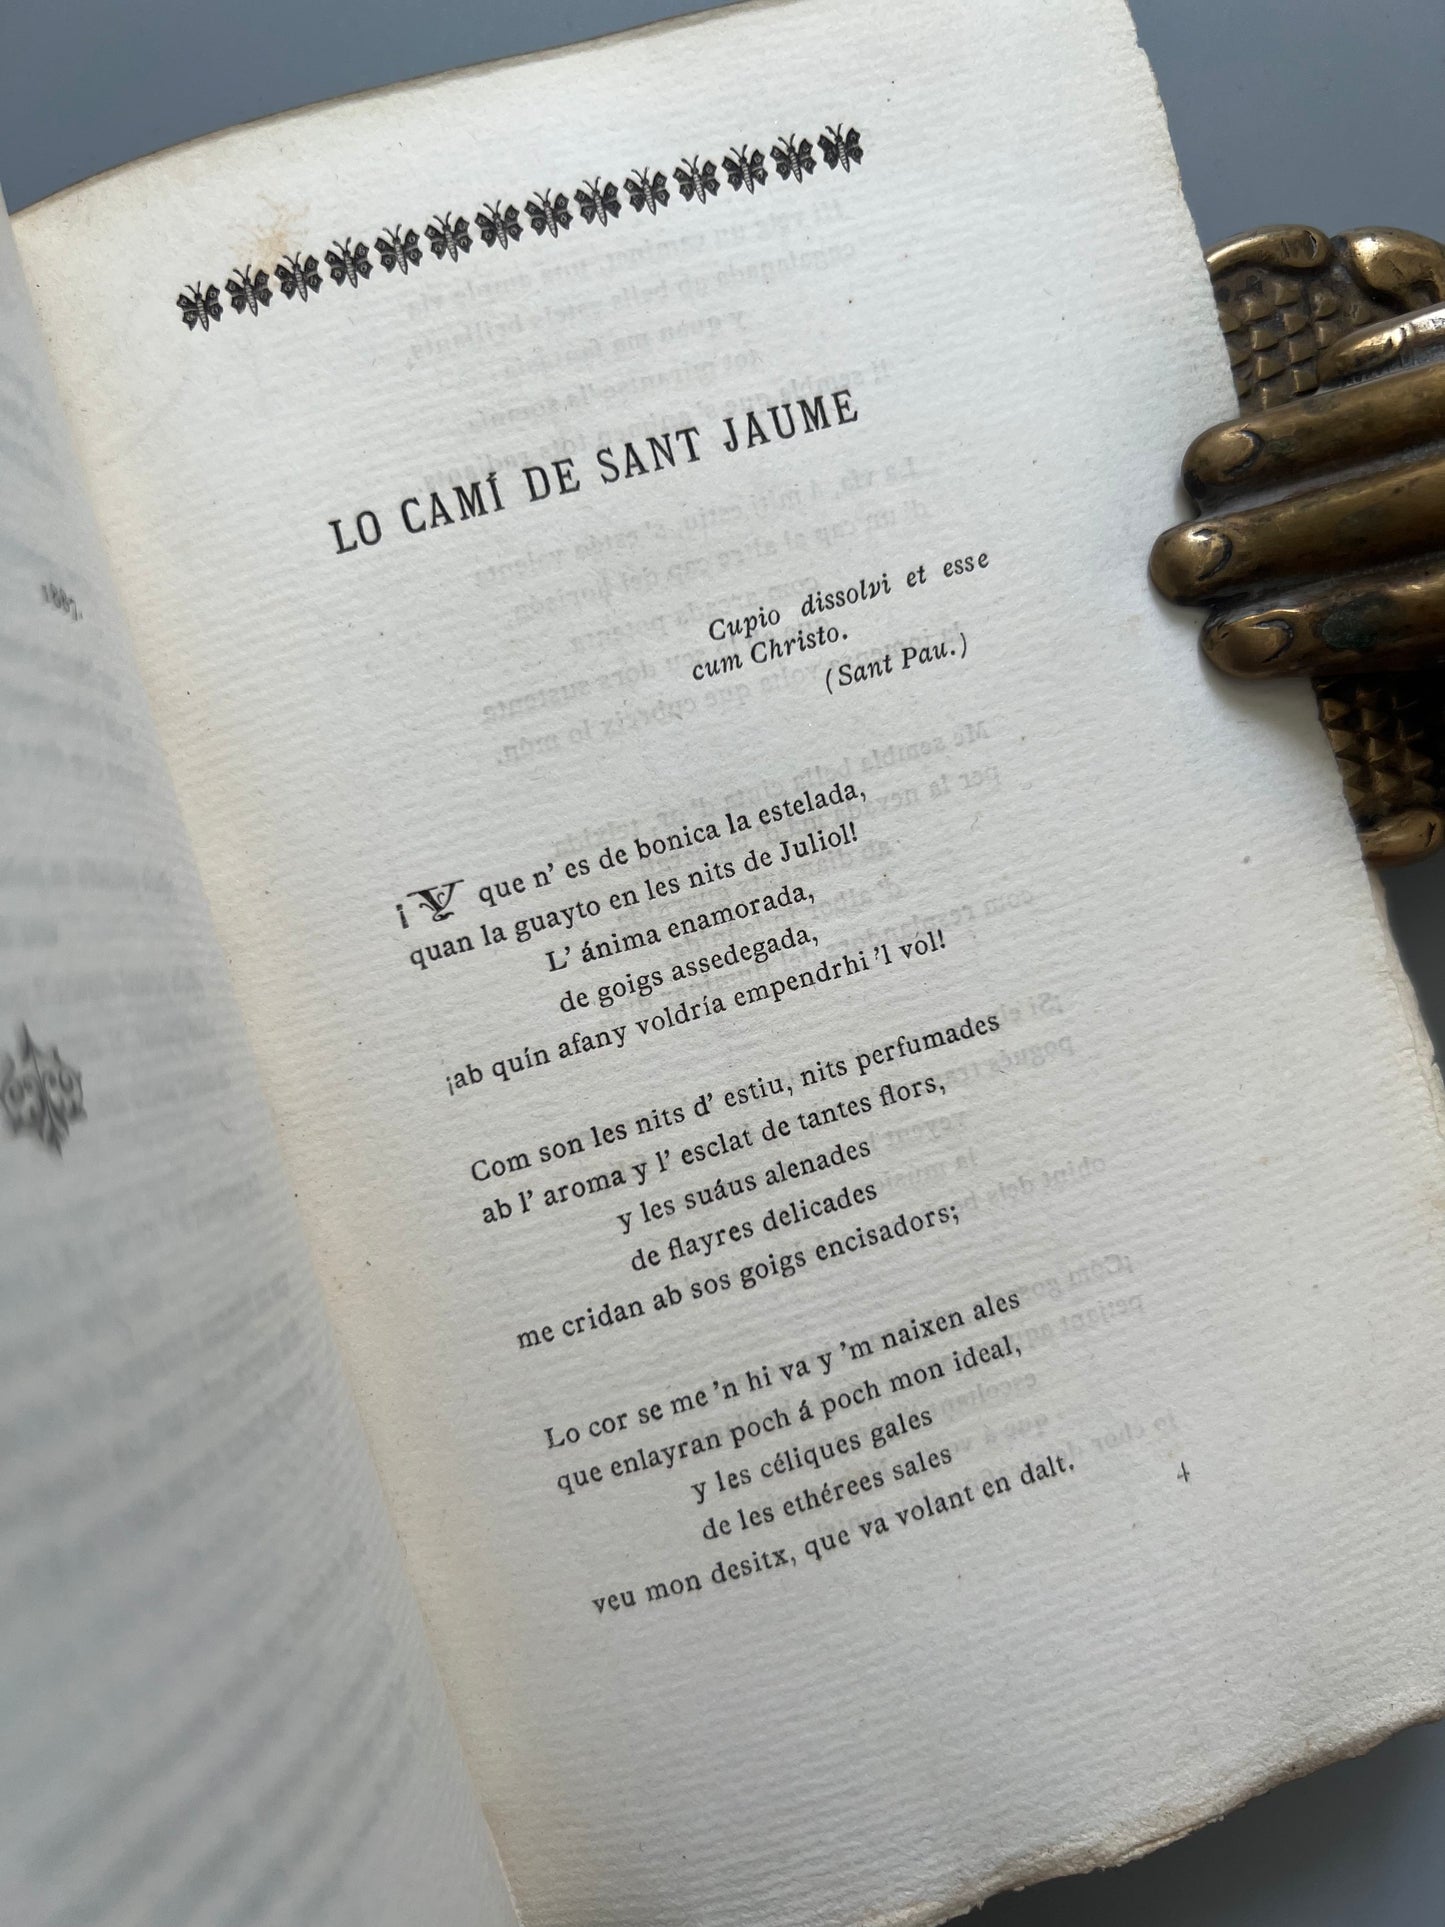 Poesies d'Arthur Masriera, Companyia de Jesús - Llibreria católica, 1893